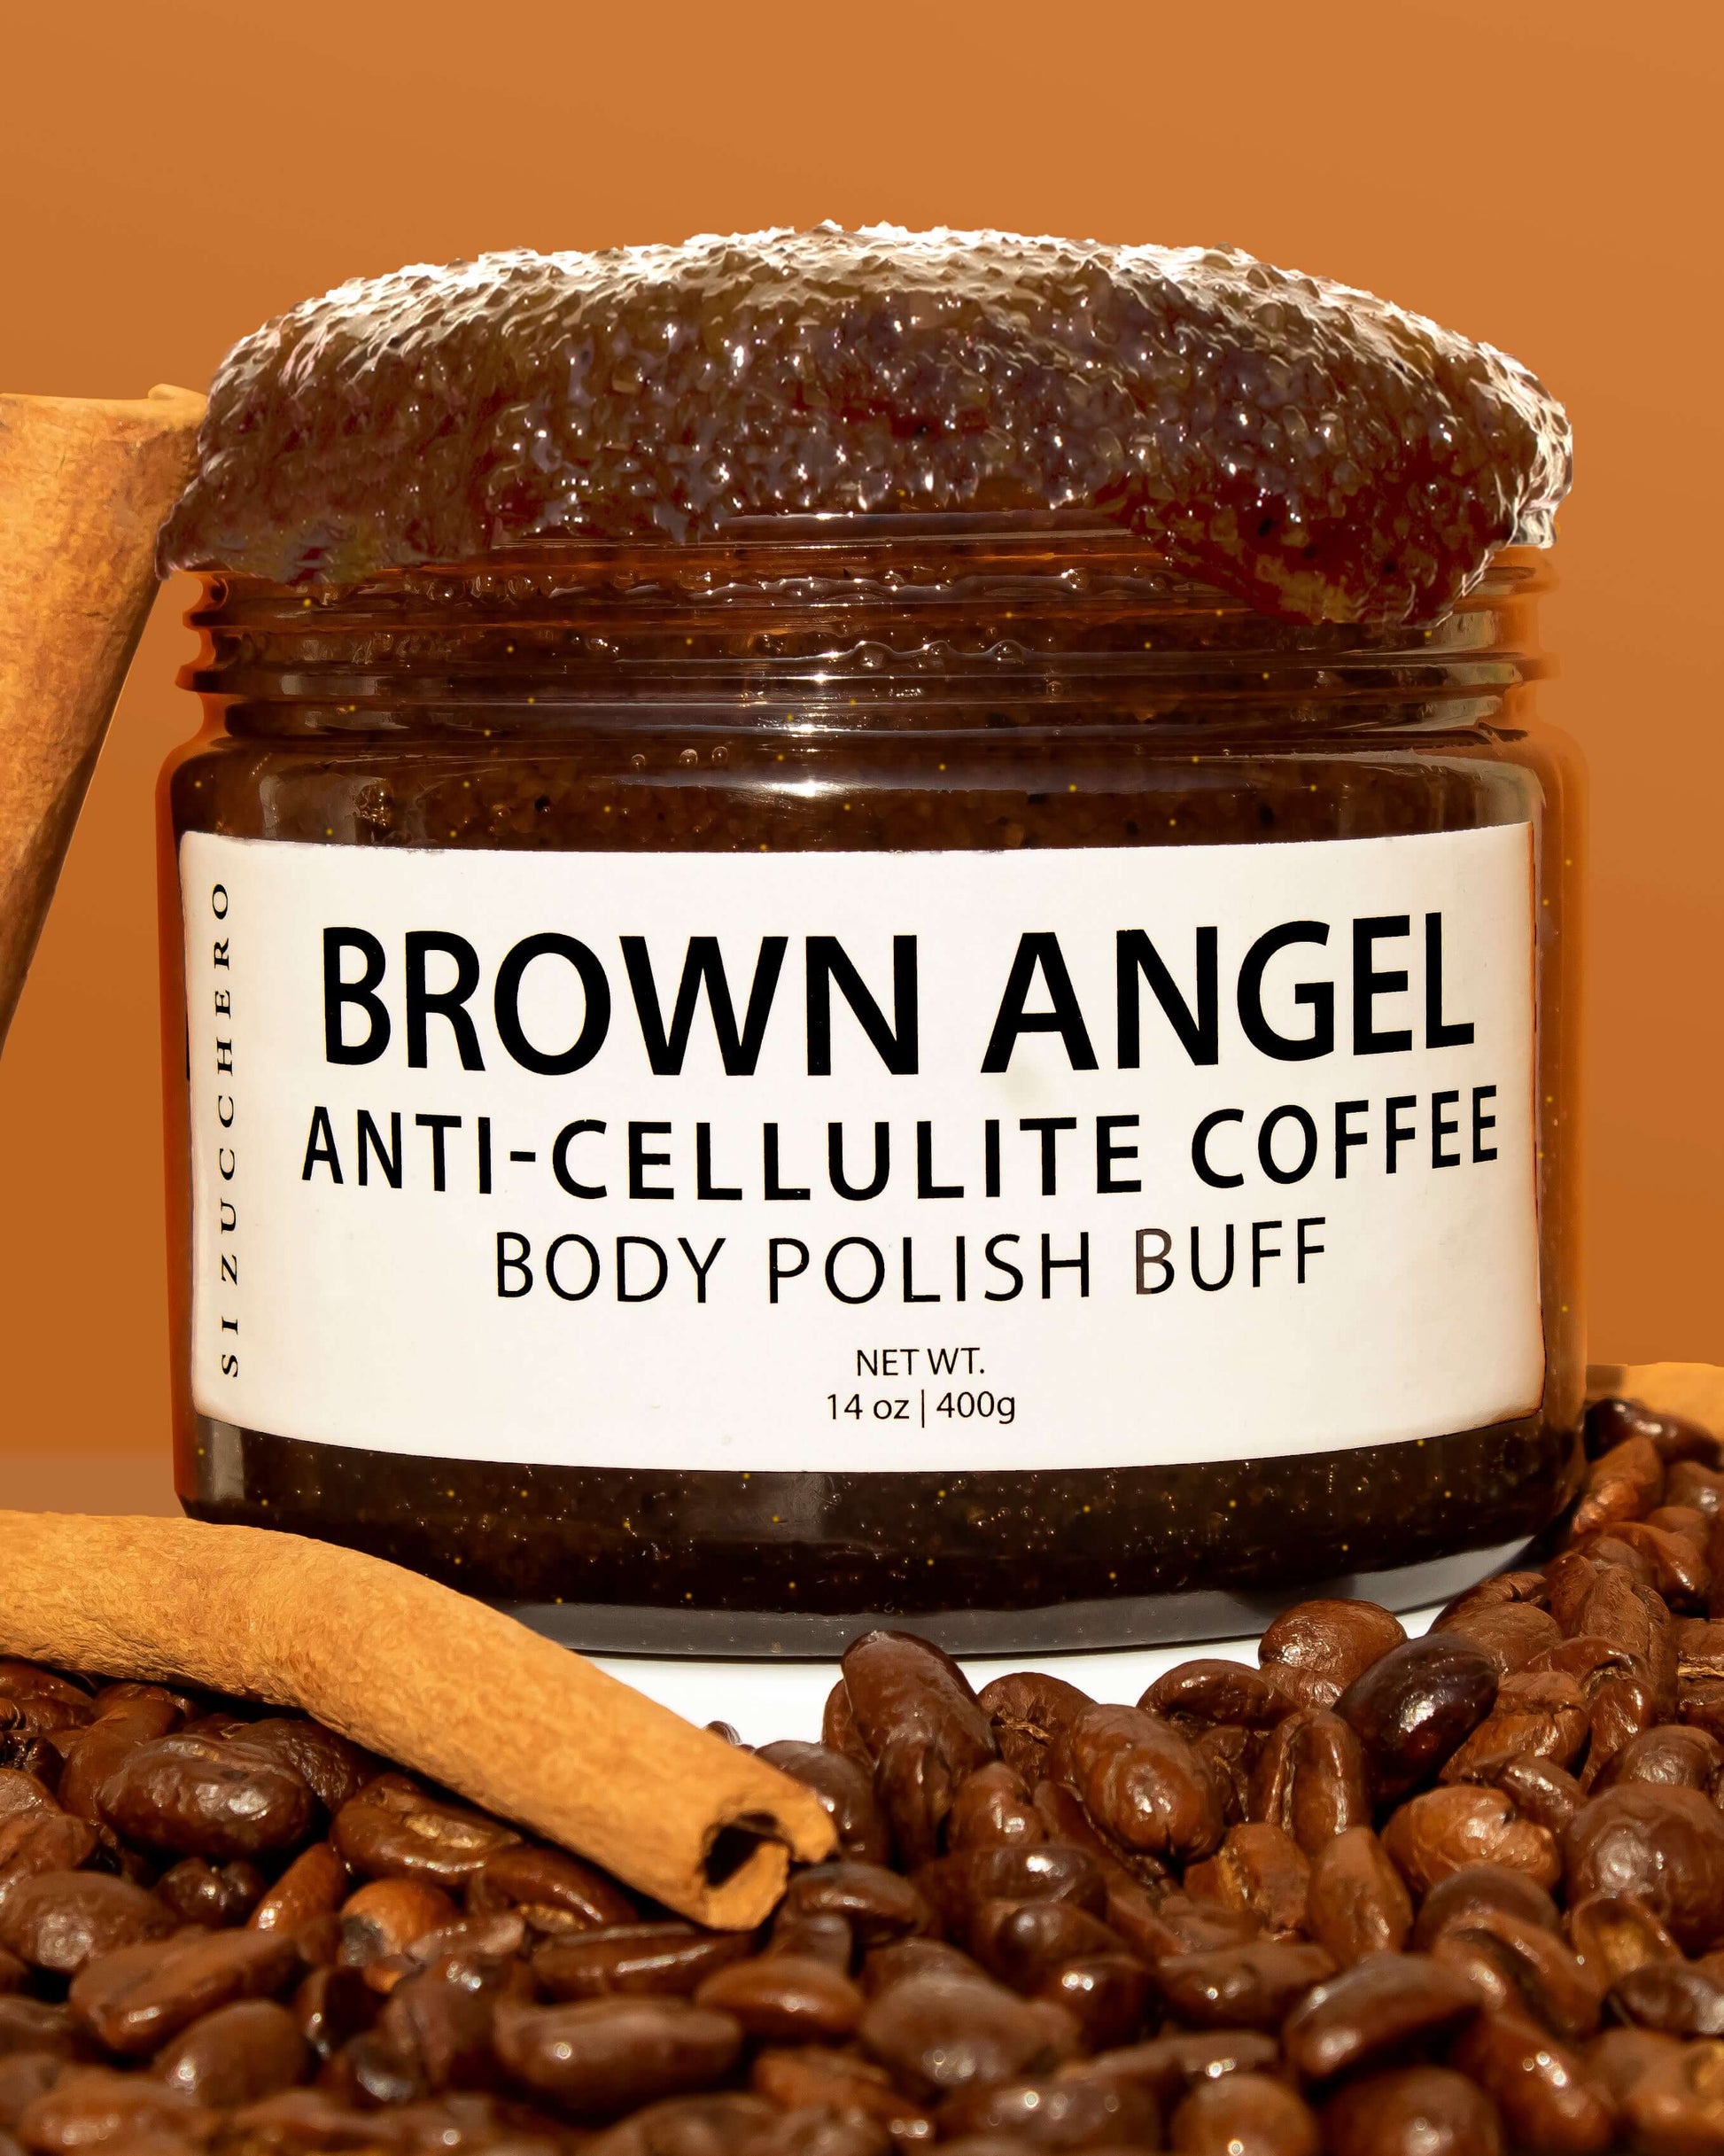 Coffee body polish buff